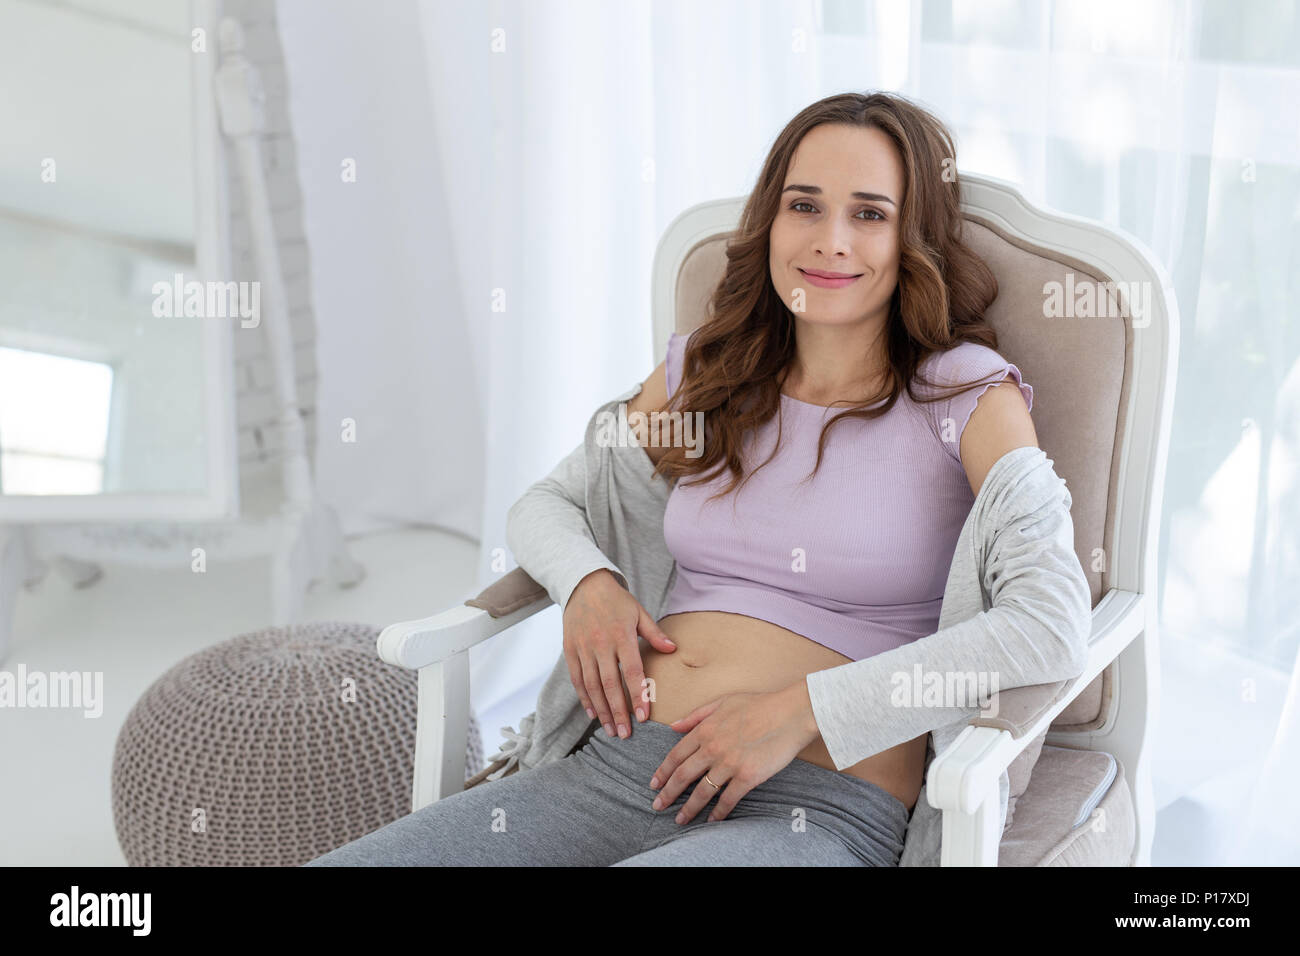 Allegra donna incinta in appoggio su una sedia Foto Stock